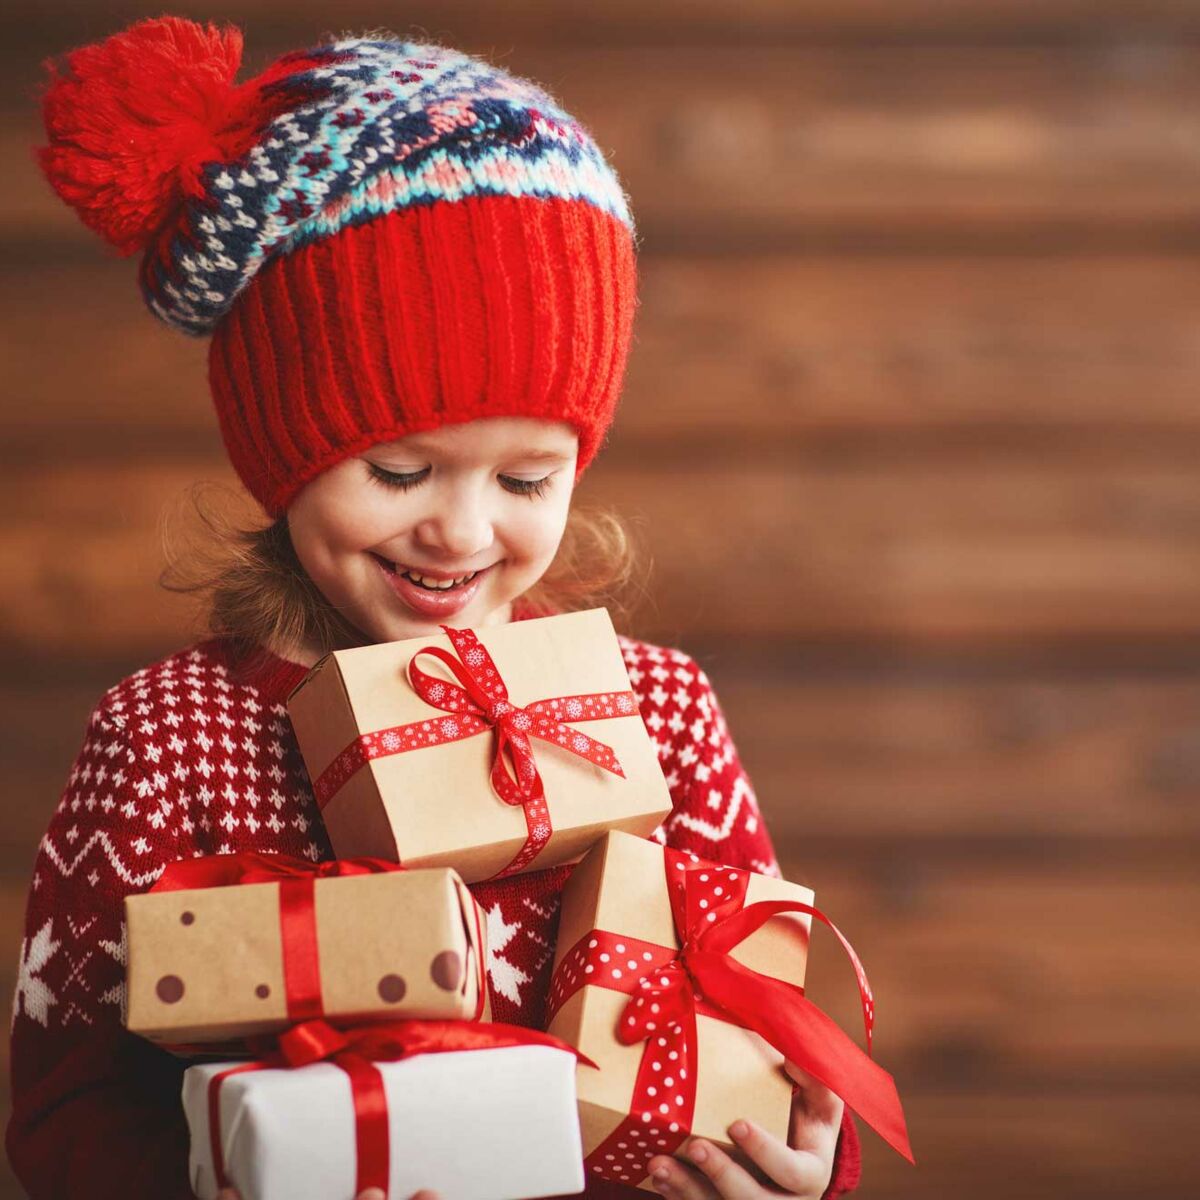 Gâtez votre enfant avec ce cadeau exceptionnel 🥰 ✔️ Le meilleur moyen